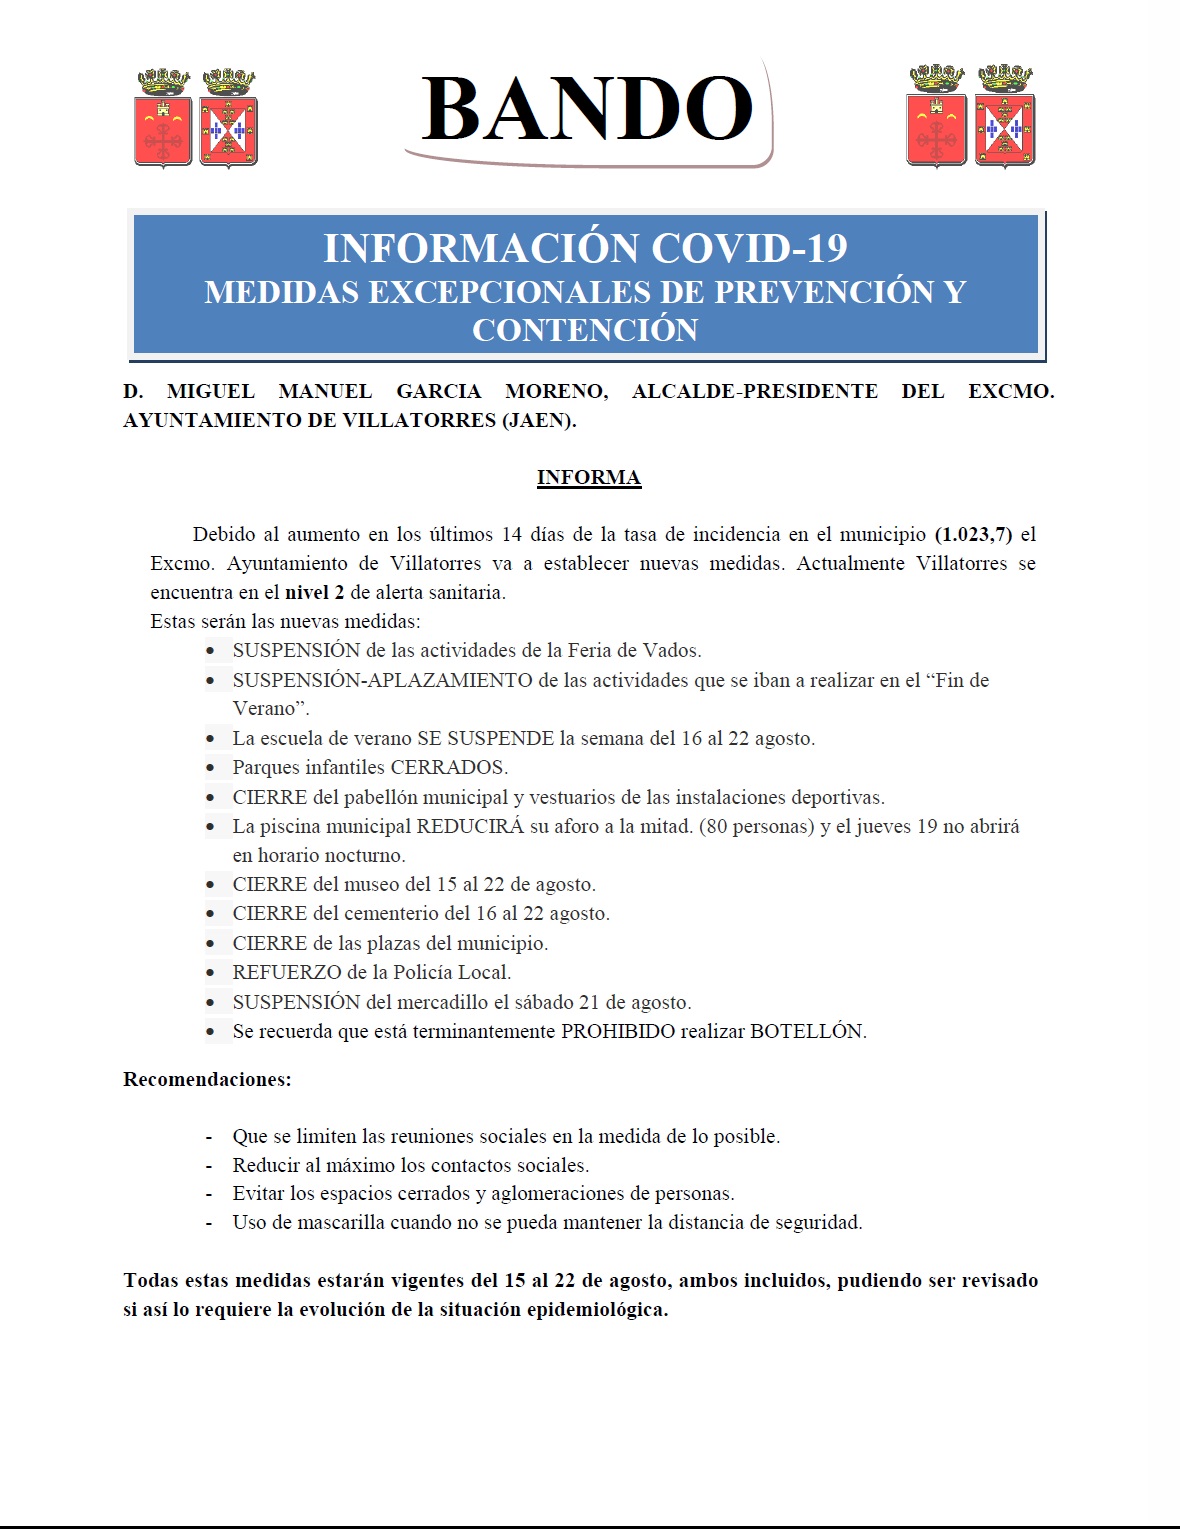 Bando sobre medidas excepcionales de prevención y contención del Covid-19